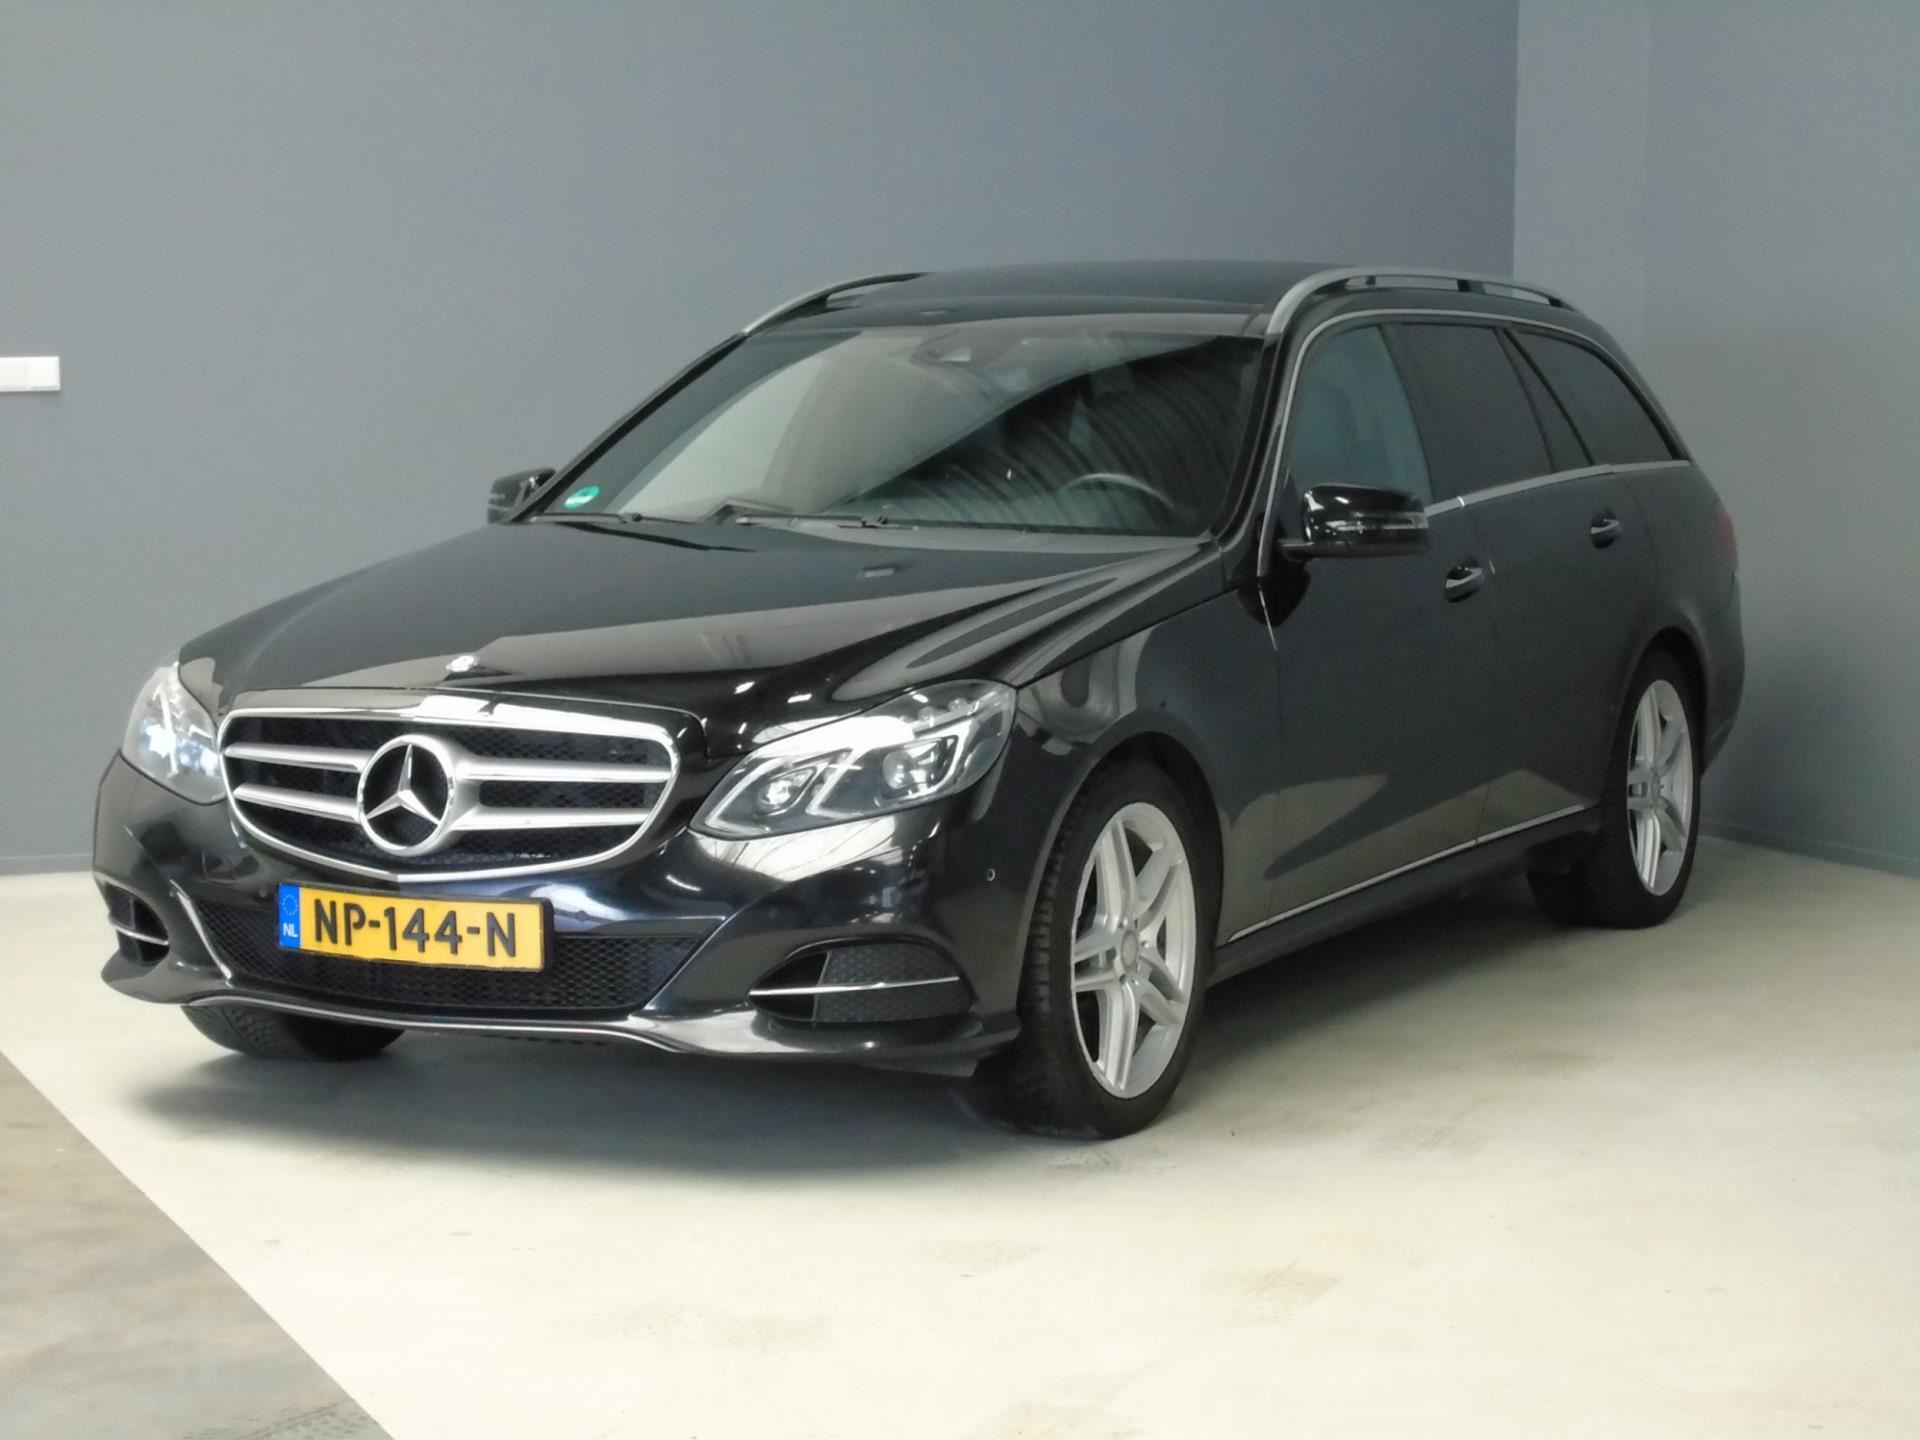 Mercedes-Benz E-klasse Estate occasion - van Dijk auto's